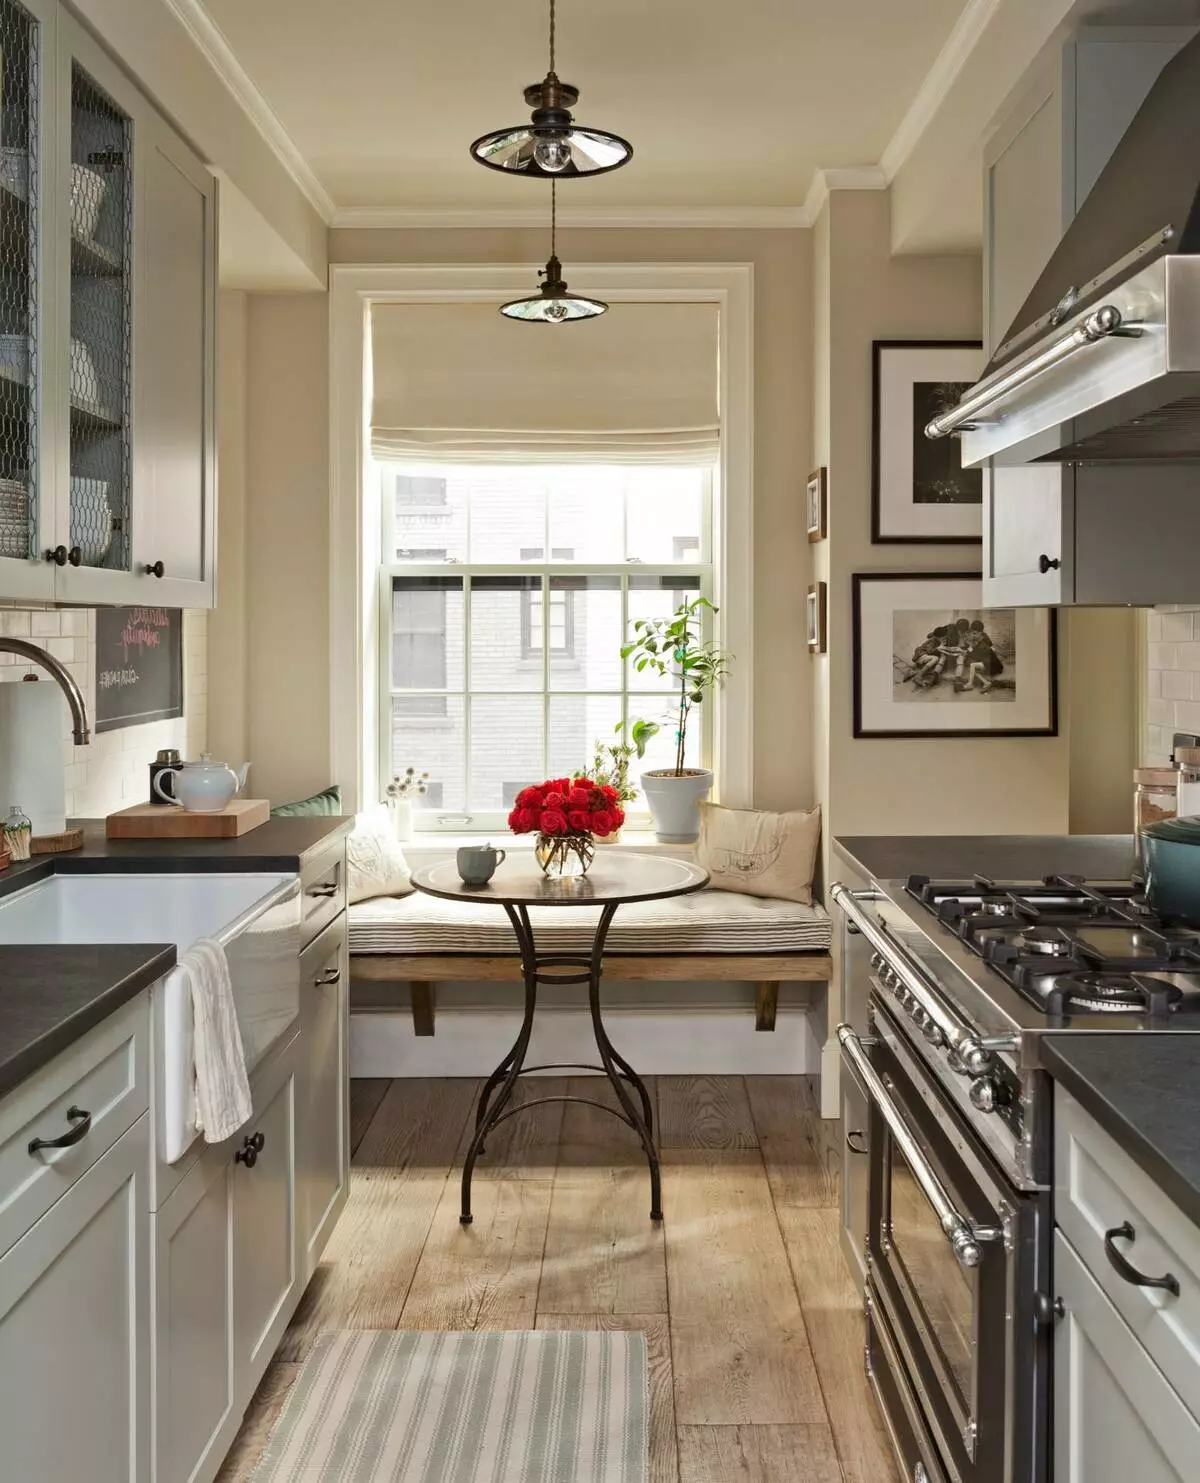 Piccole cucine accoglienti (40 foto): opzioni di interior design per cucine piccole. Come rendere bella la cucina e creare un conforto in esso? 9528_3